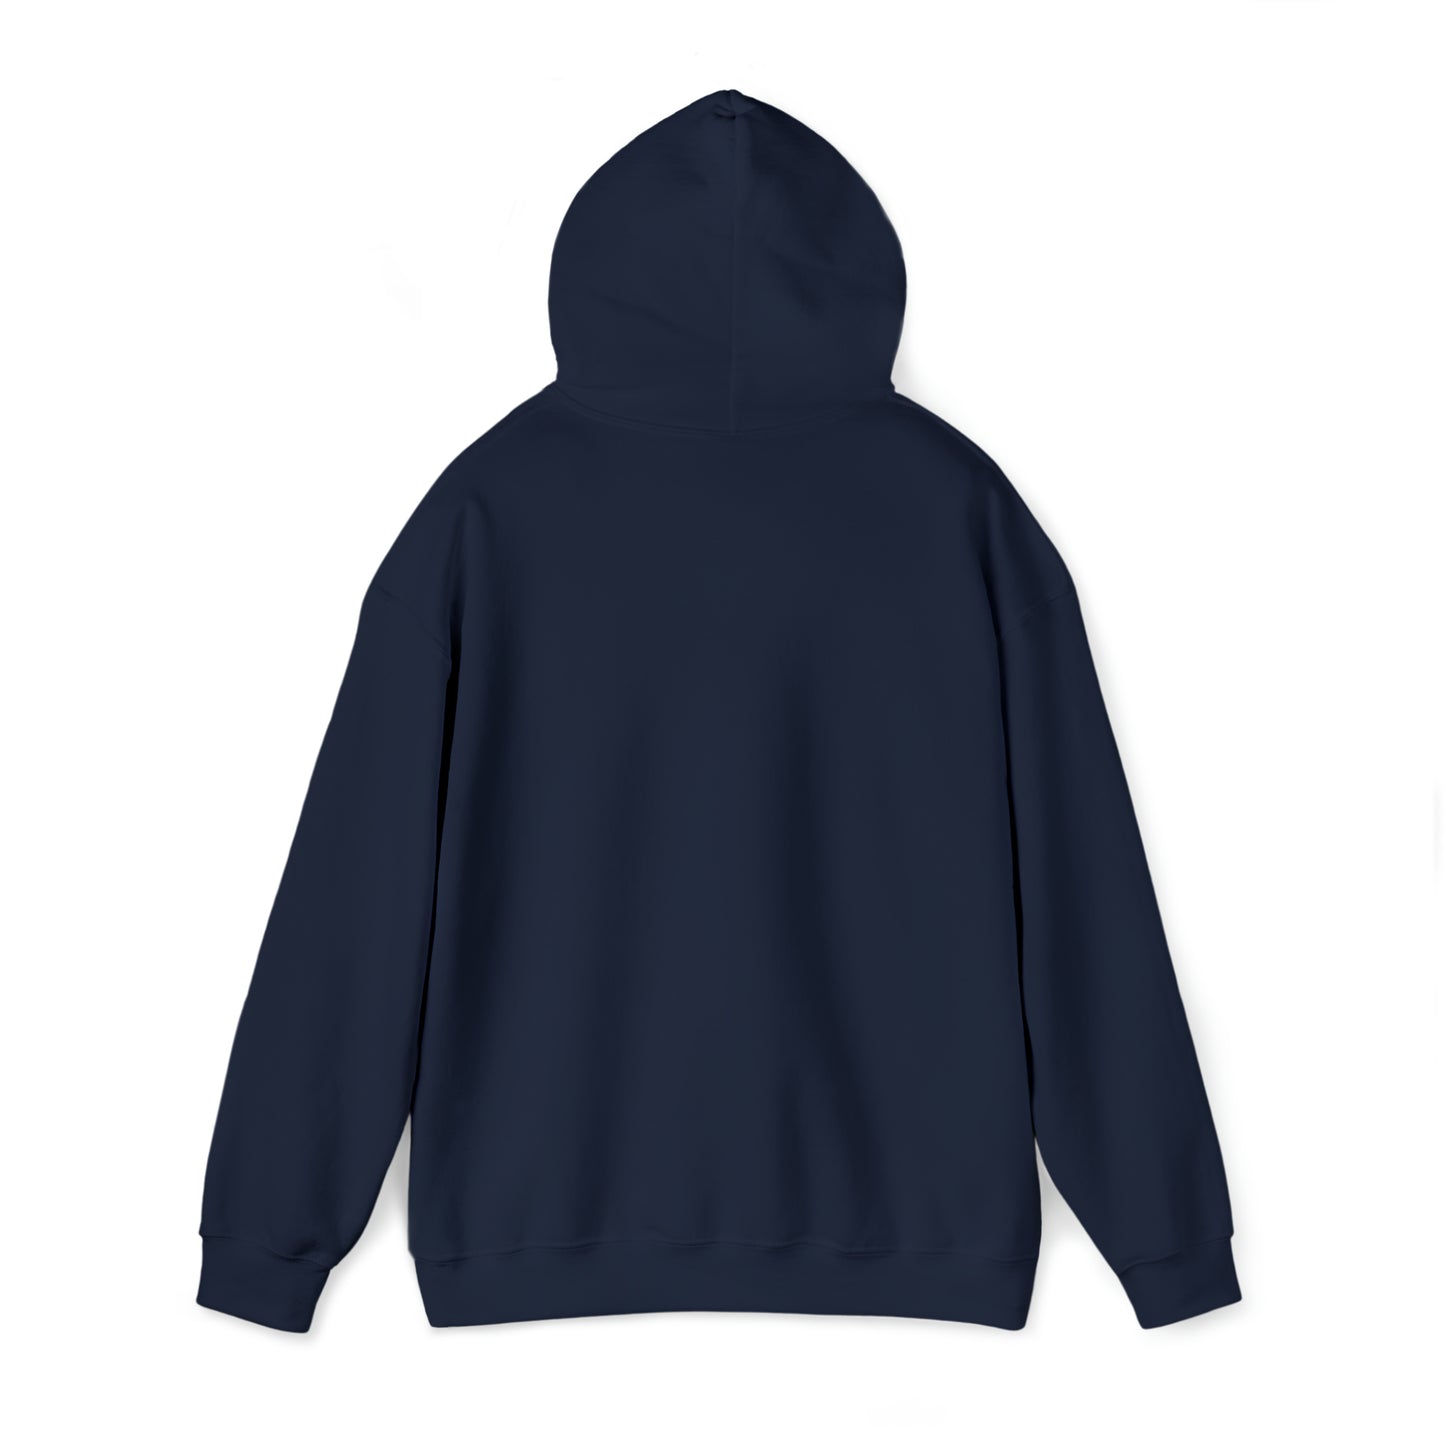 Centennial - Men's Heavy Blend Hooded Sweatshirt - Class Of 2026